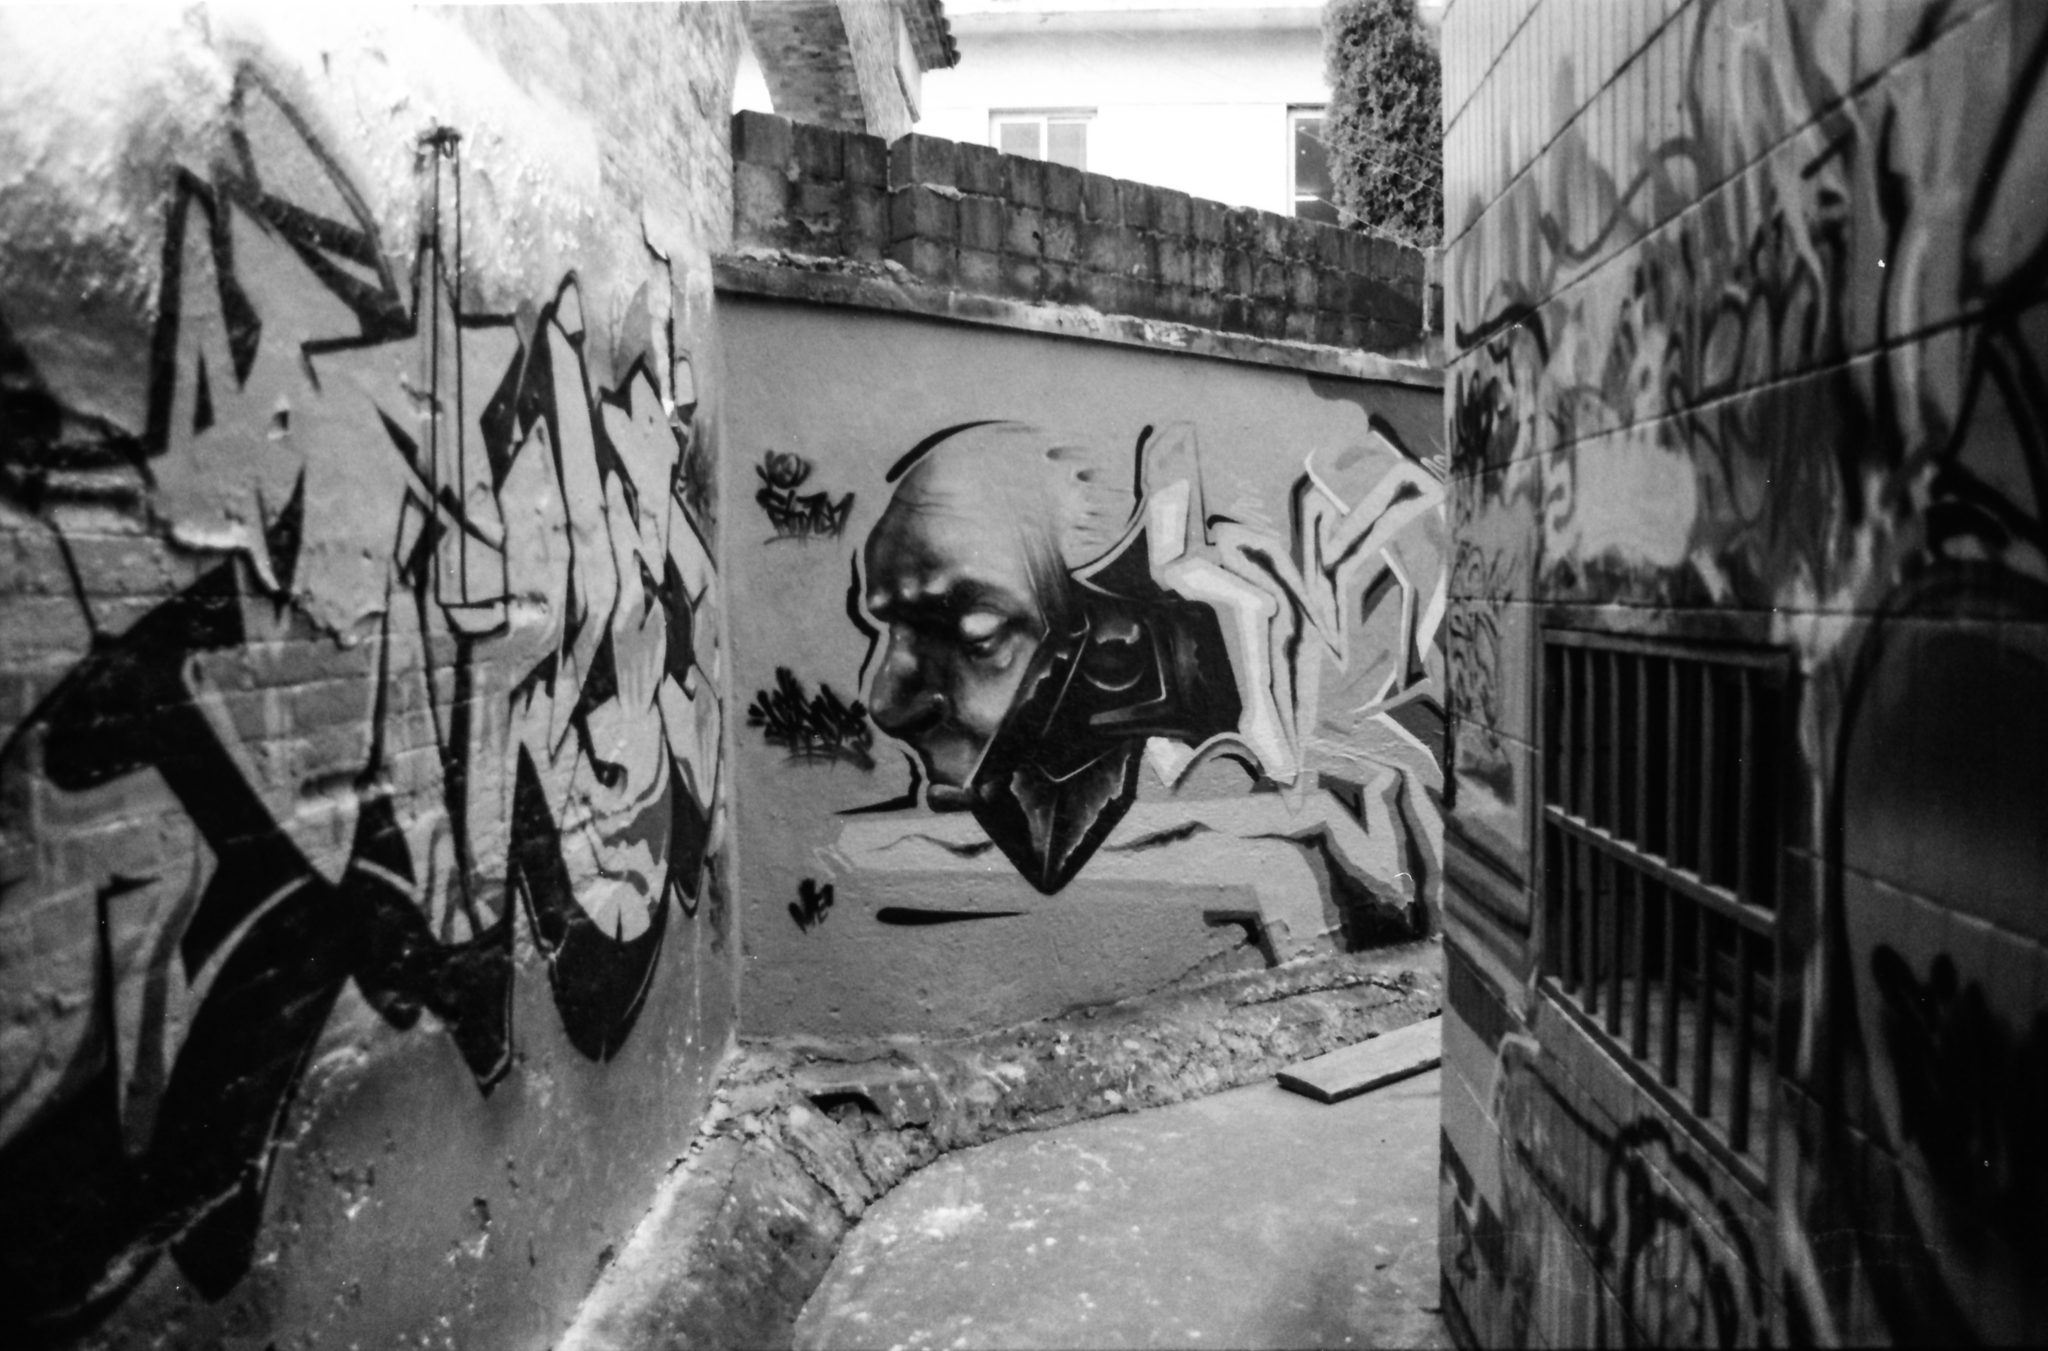  Shoot_Graffiti_Portfolio